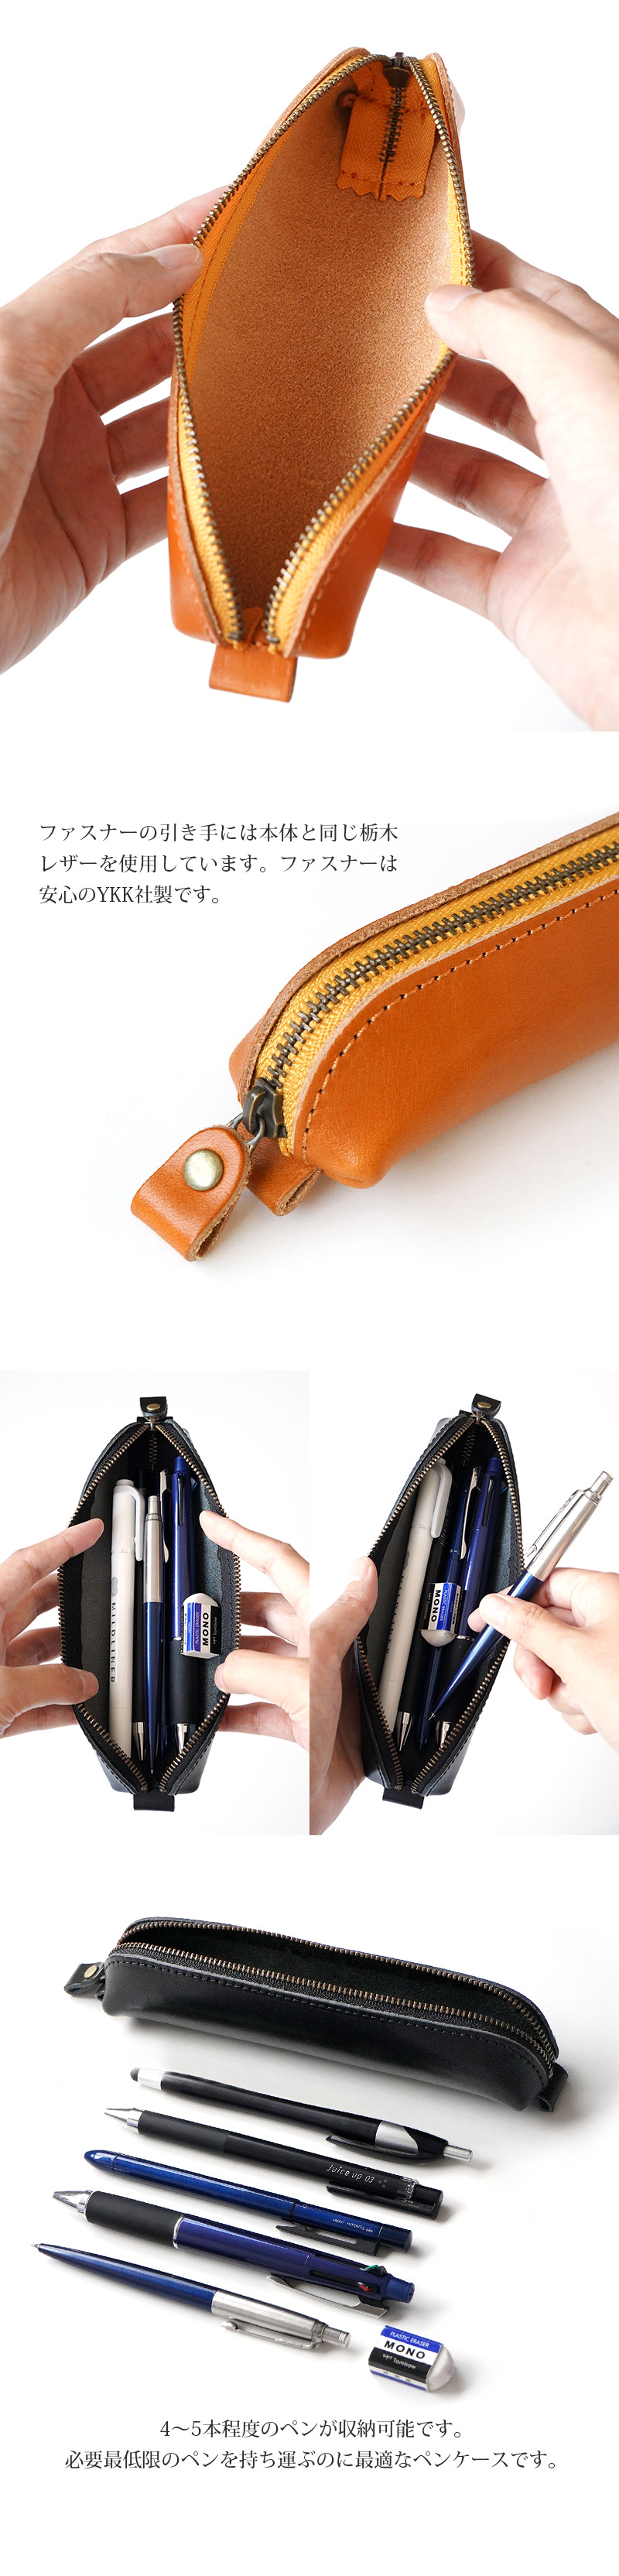 4～5本程度のペンが収納可能です。必要最低限のペンを持ち運ぶのに最適なペンケースです。